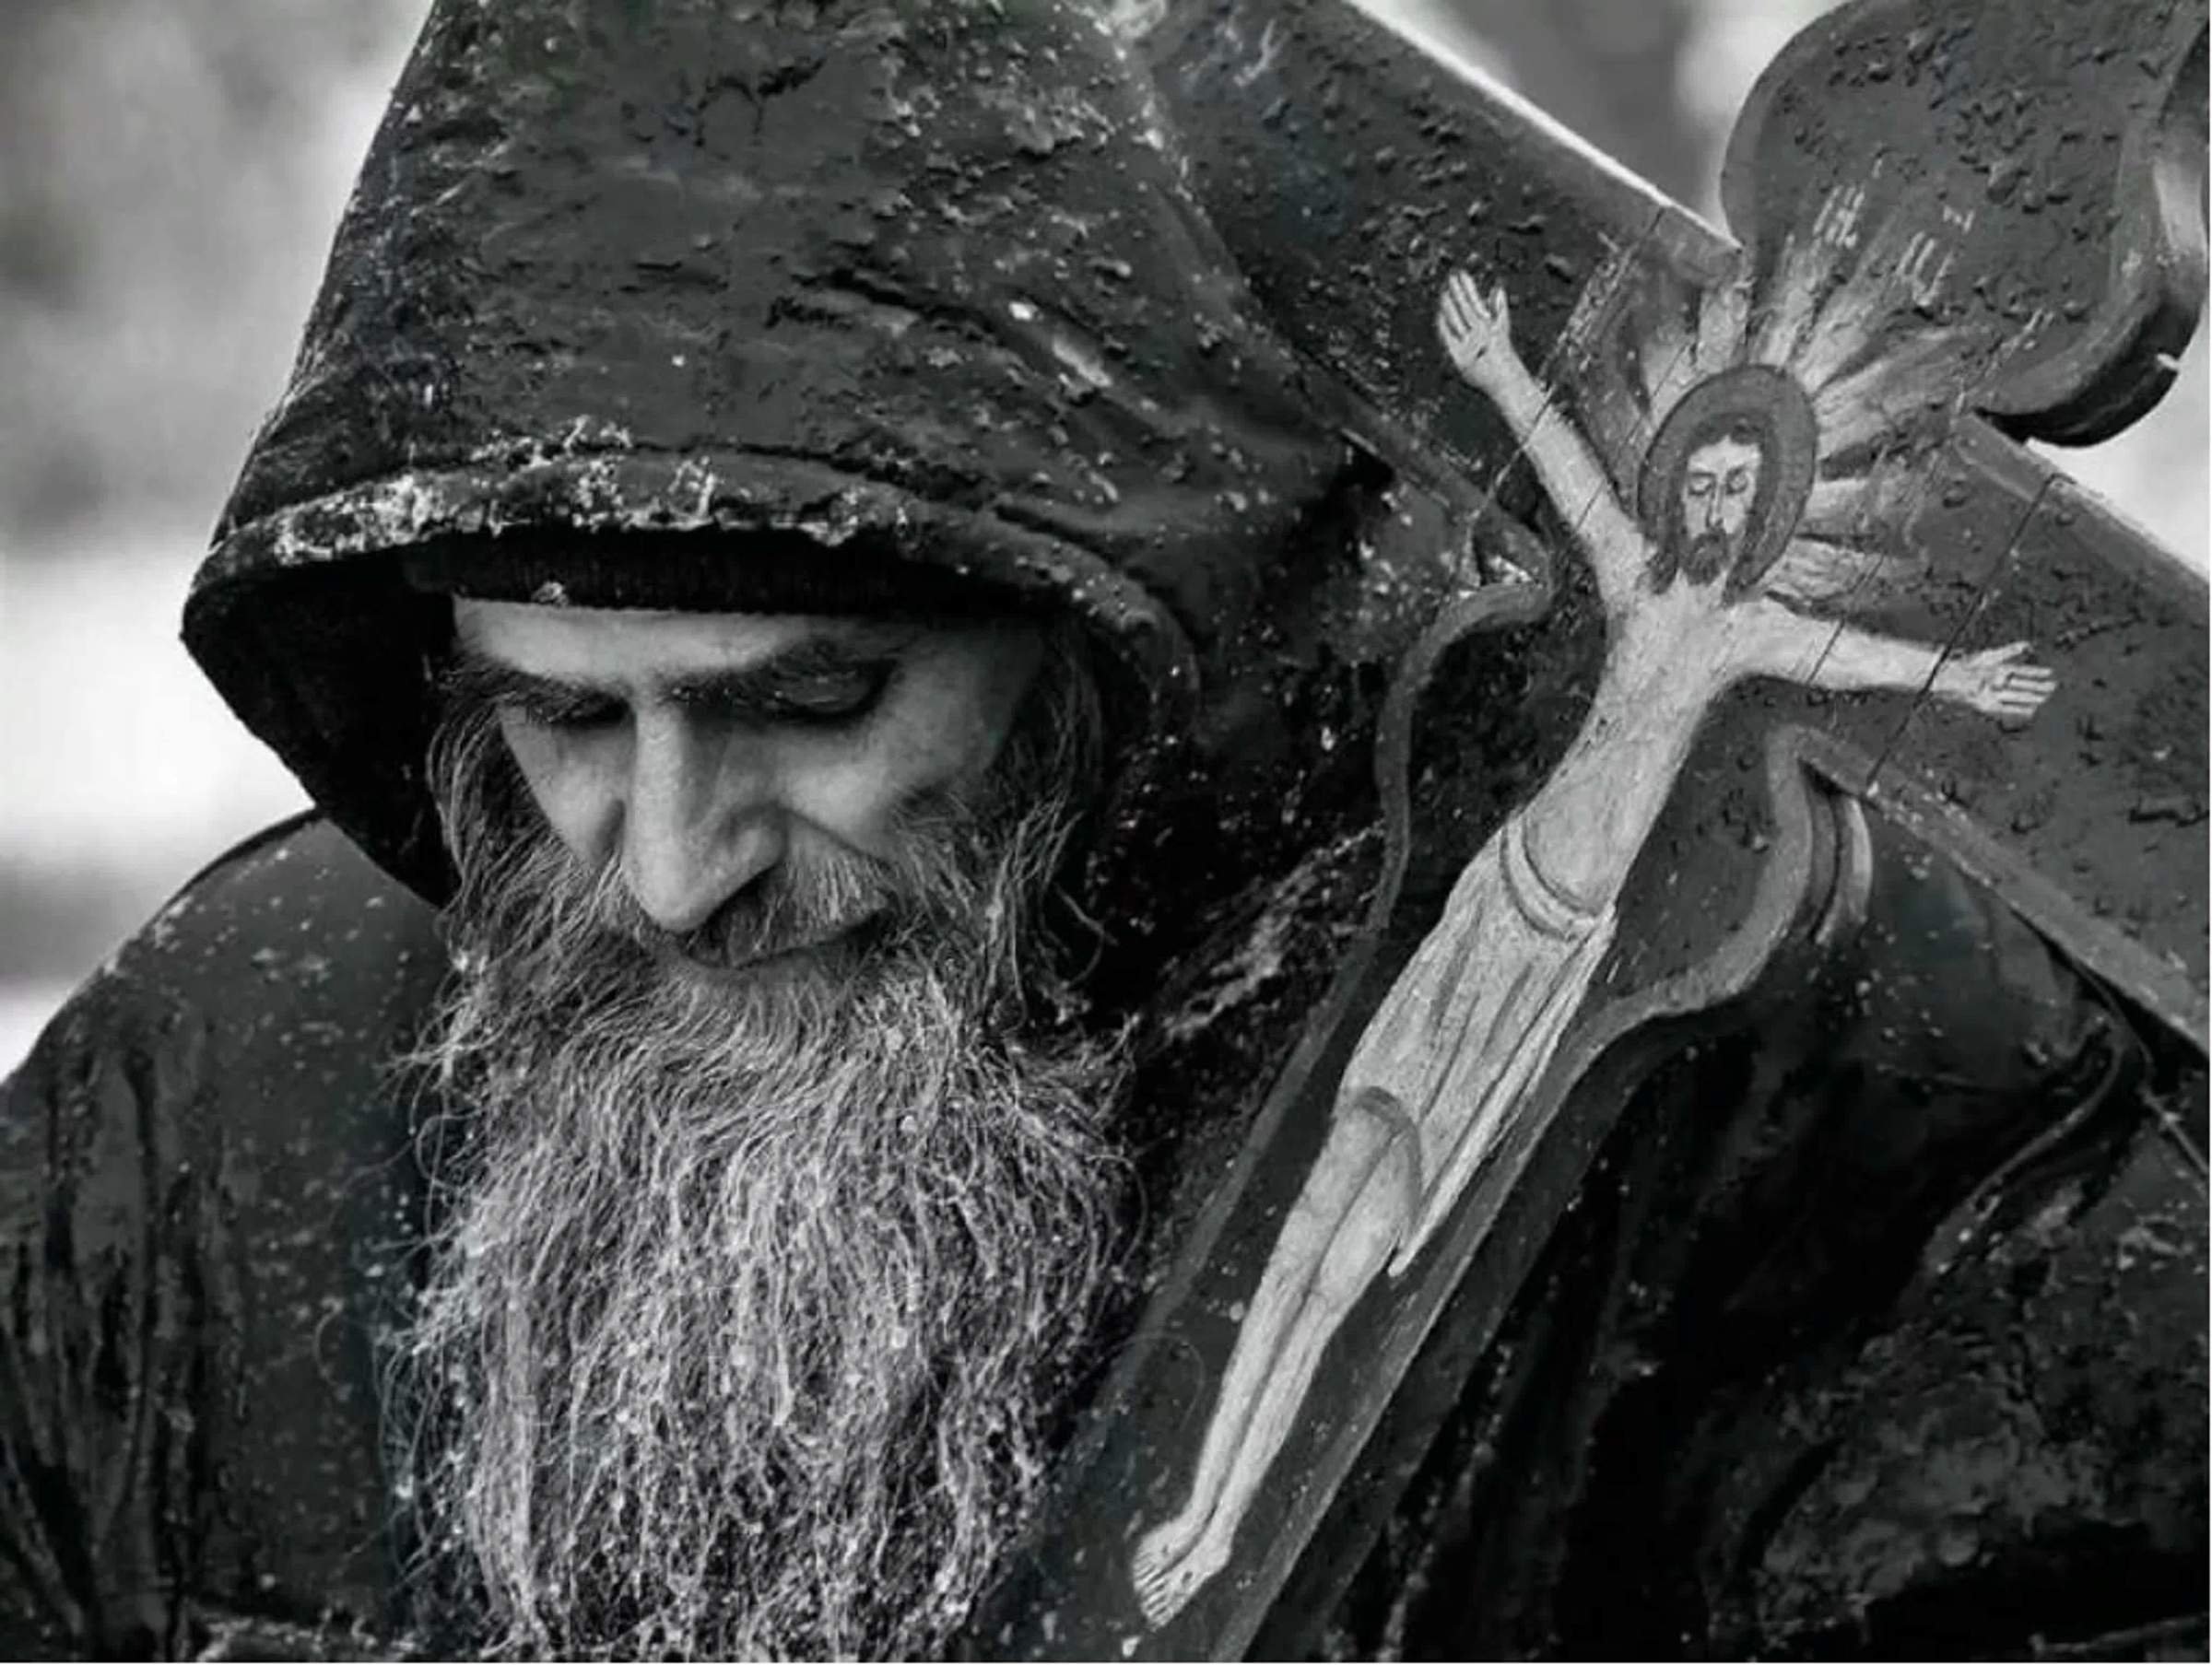 Бог о терпении и смирении. Православный монах. Православные старцы. Православные люди. Православная тематика.